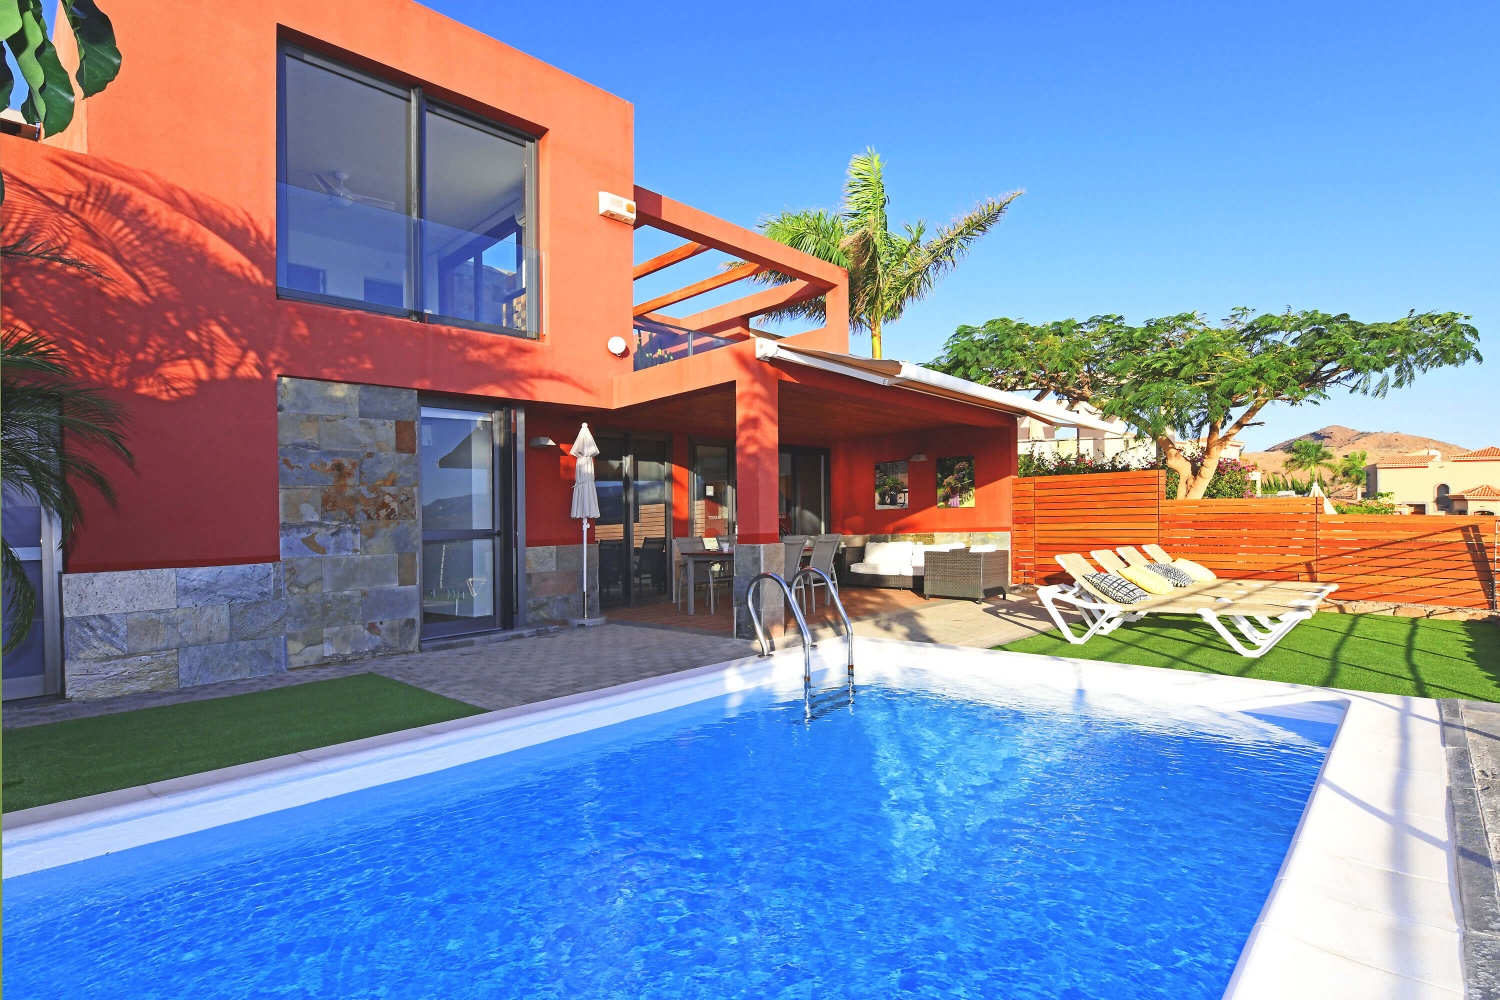 Maison moderne de deux chambres avec des intérieurs élégants, une grande piscine et une terrasse avec vue panoramique